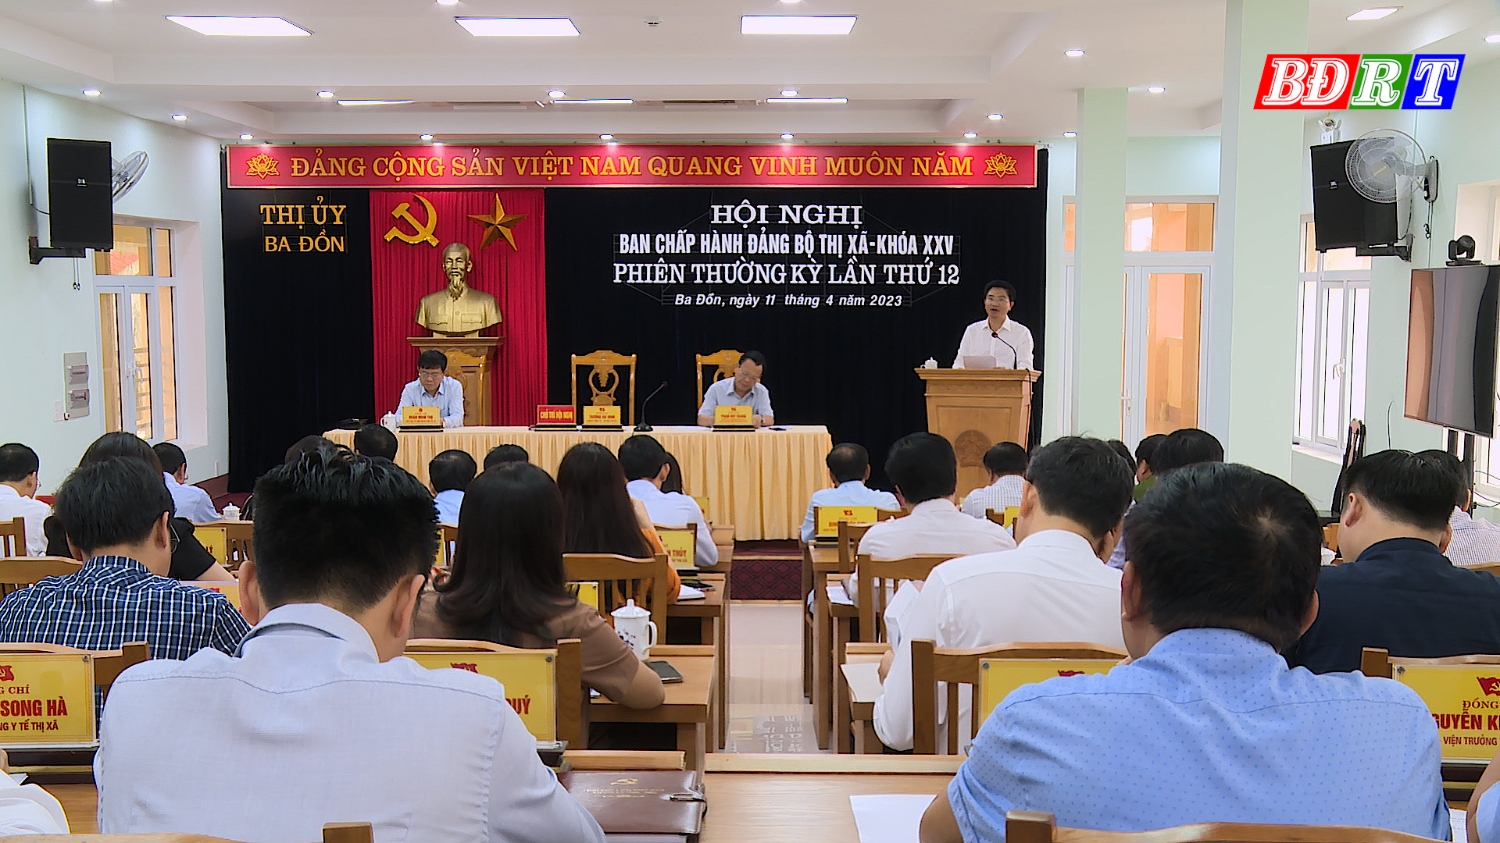 Toàn cảnh Ban Chấp hành Đảng bộ thị xã Ba Đồn họp phiên thường kỳ lần thứ 12.